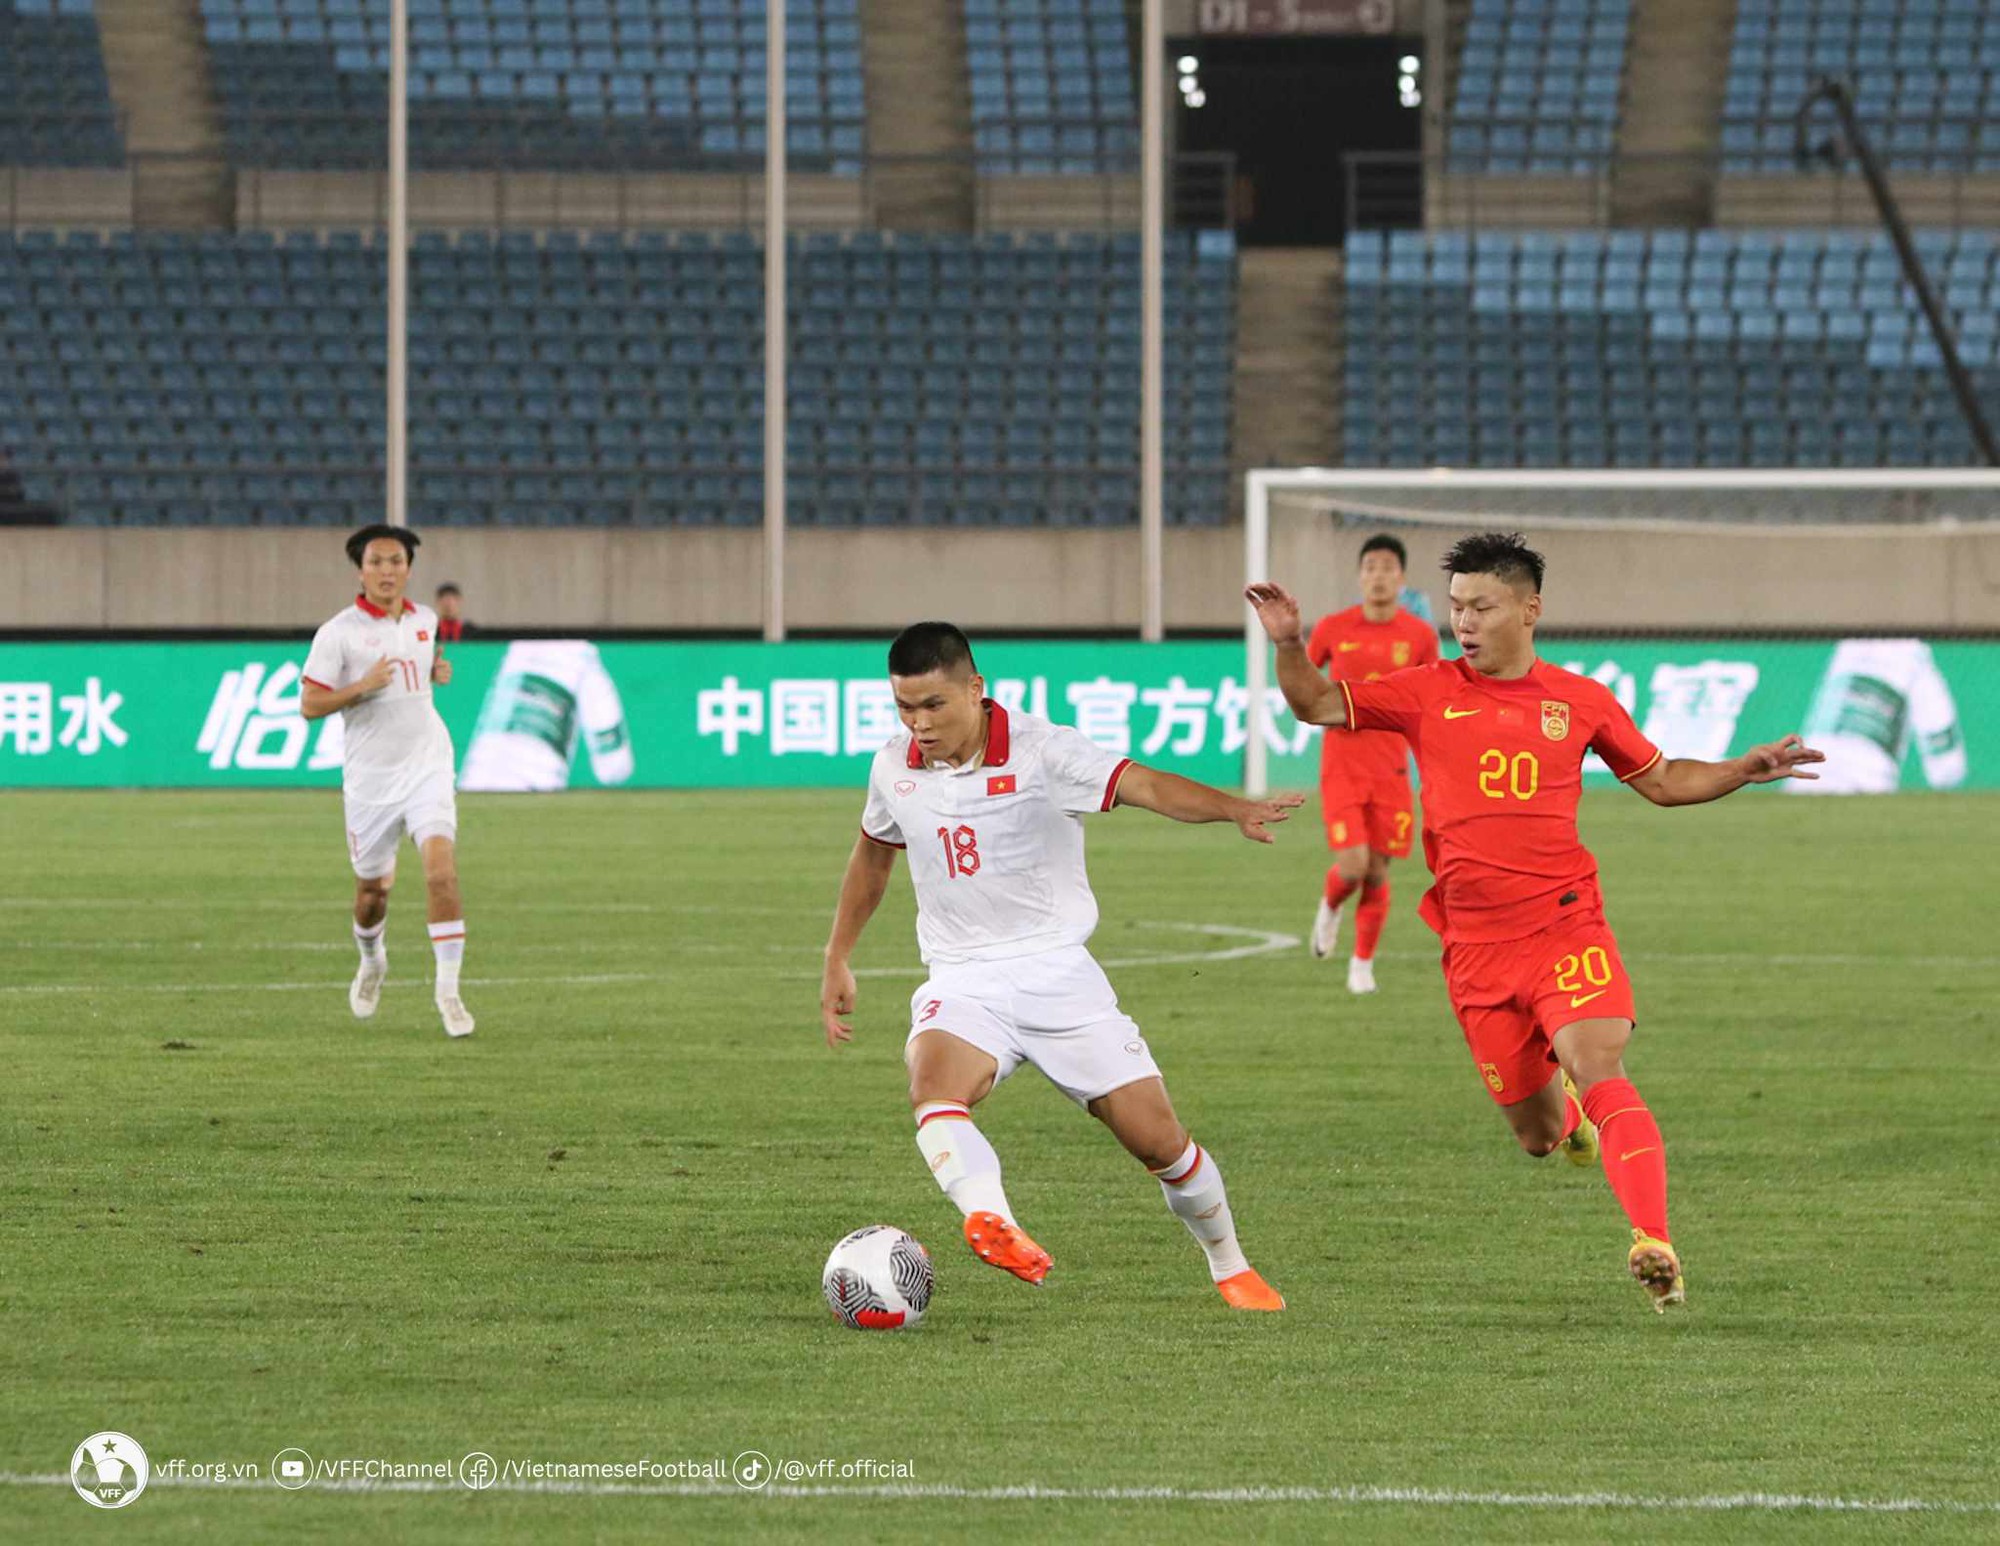 Giao hữu, đội tuyển Việt Nam 0-0 Hàn Quốc: Trận đấu quá khó của ông Troussier - Ảnh 1.